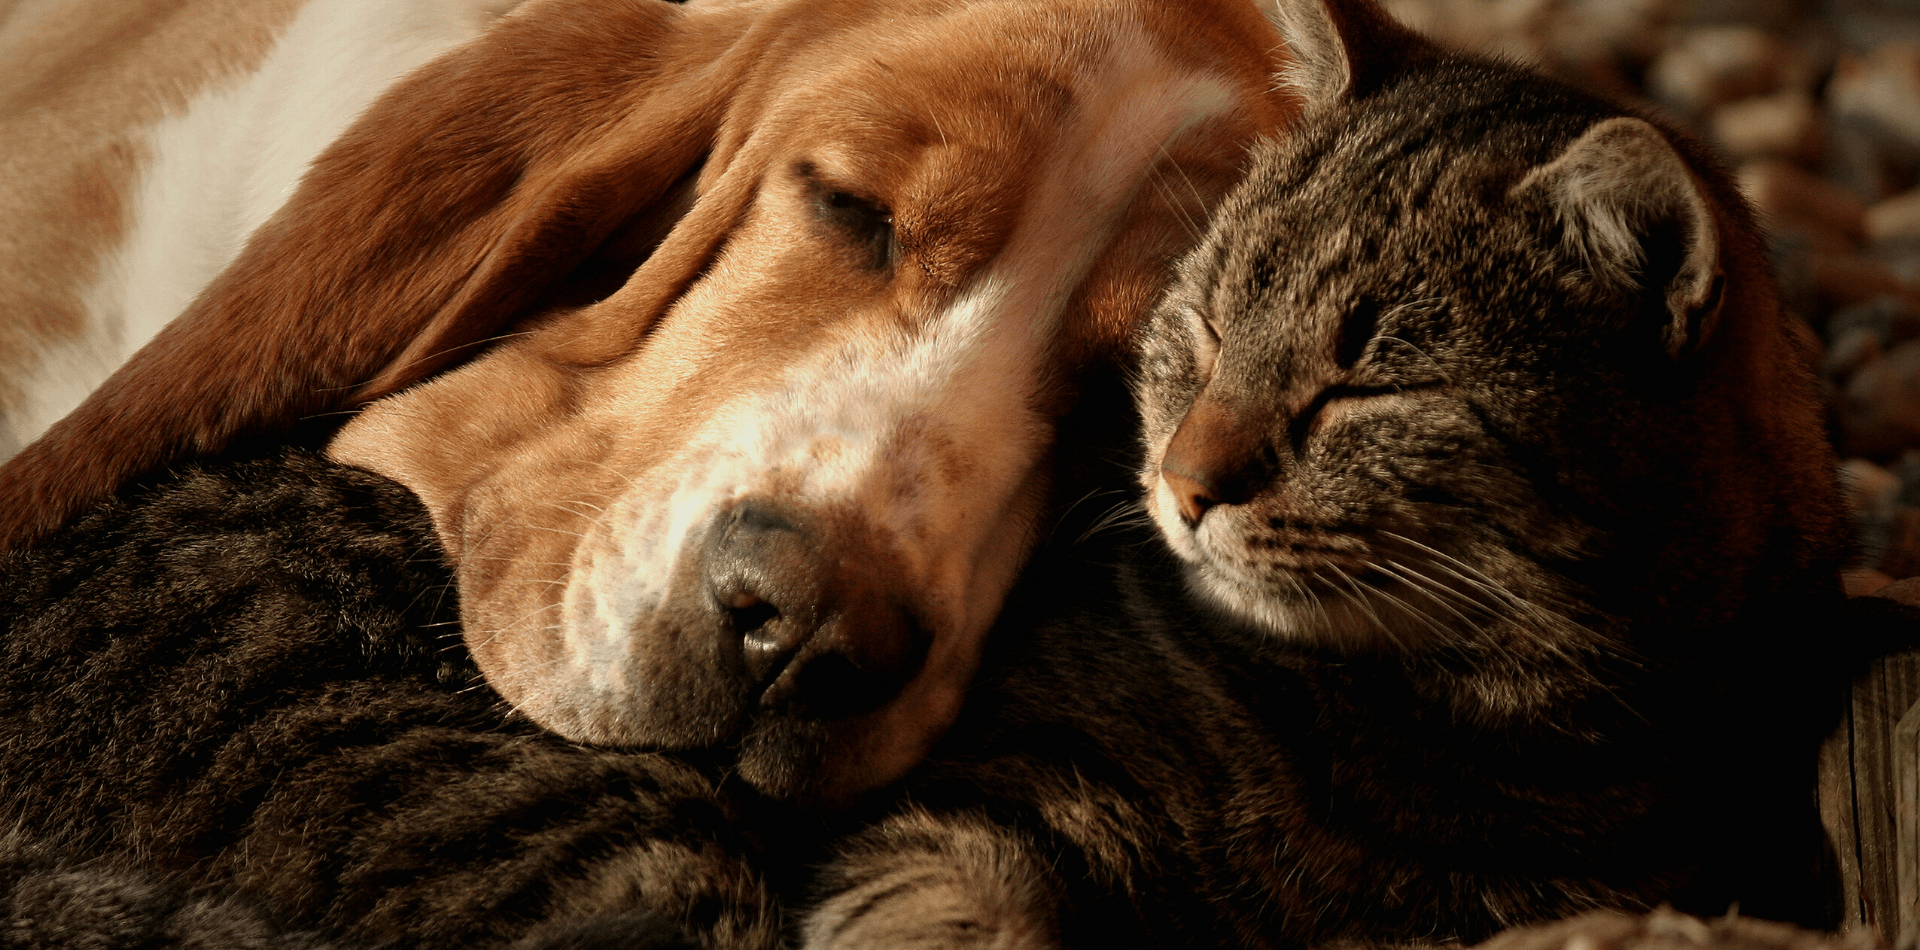 Les positions du chien et du chat durant leur sommeil - DansMaGamelle